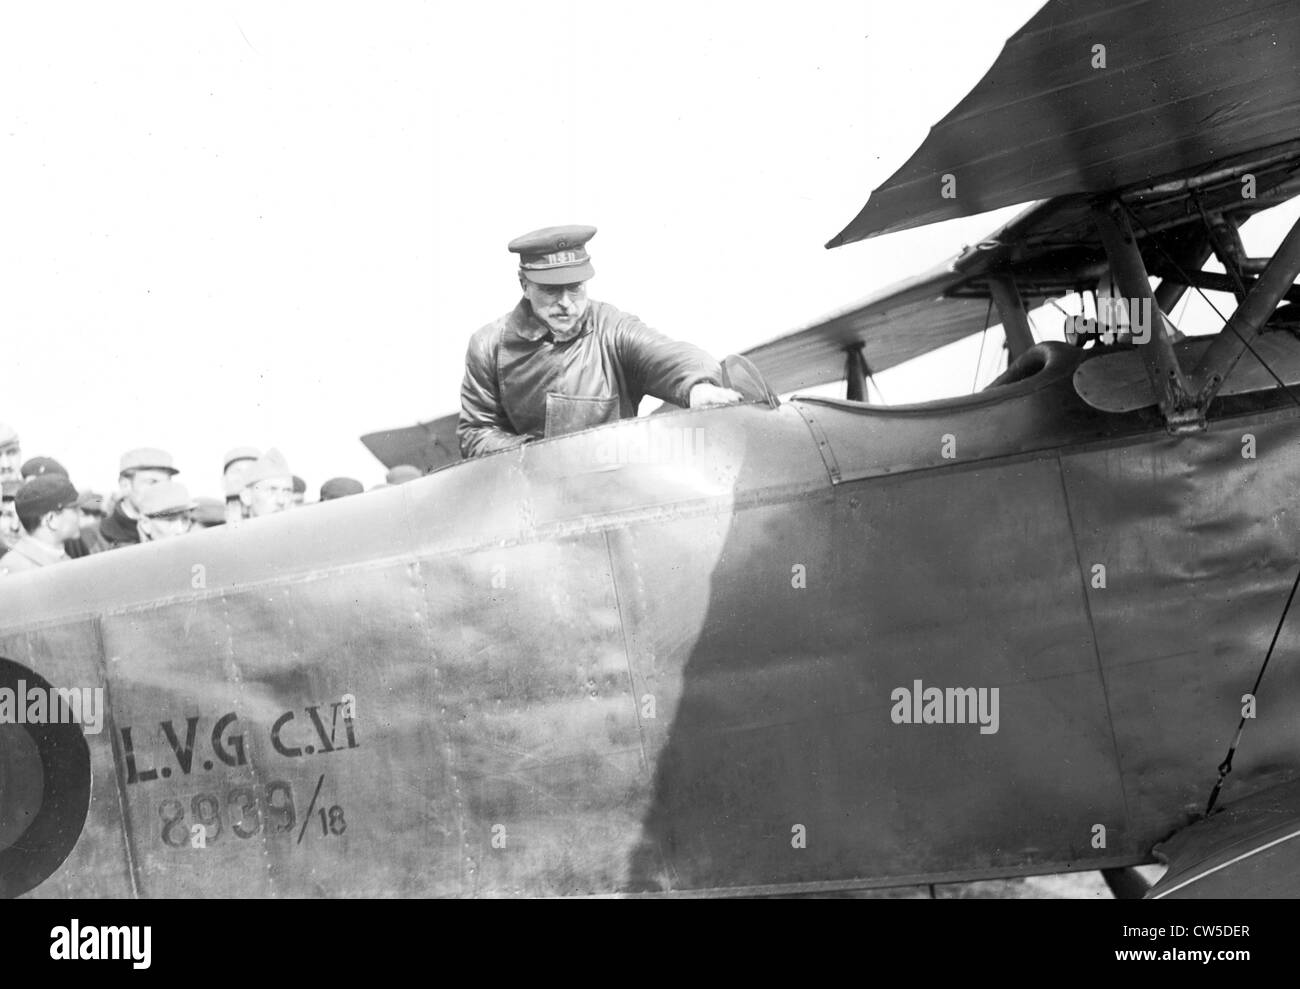 Albert i., König von Belgien, geht es zurück nach Brüssel. Er ist immer auf die deutschen Flugzeuge, Typ L.V.G.C.VI Stockfoto